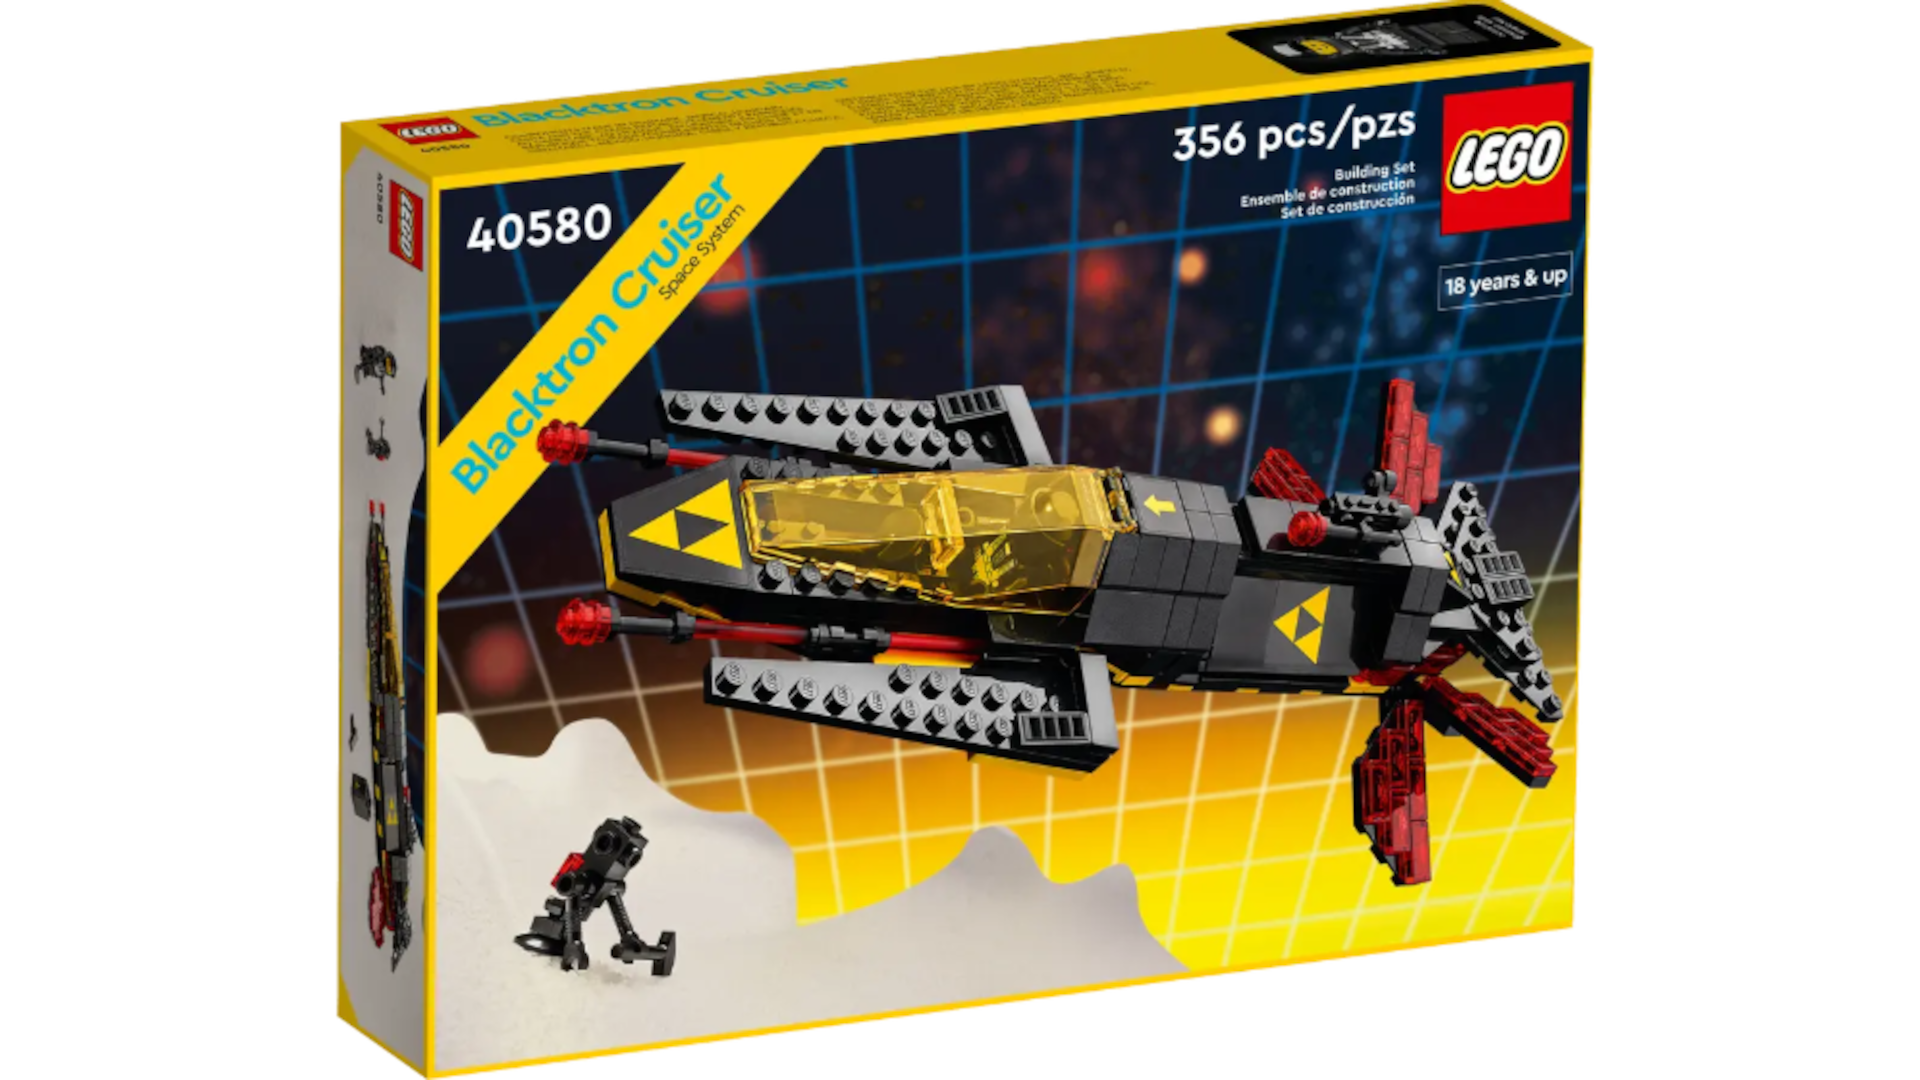 A LEGO box shows the Blacktron Cruiser set.